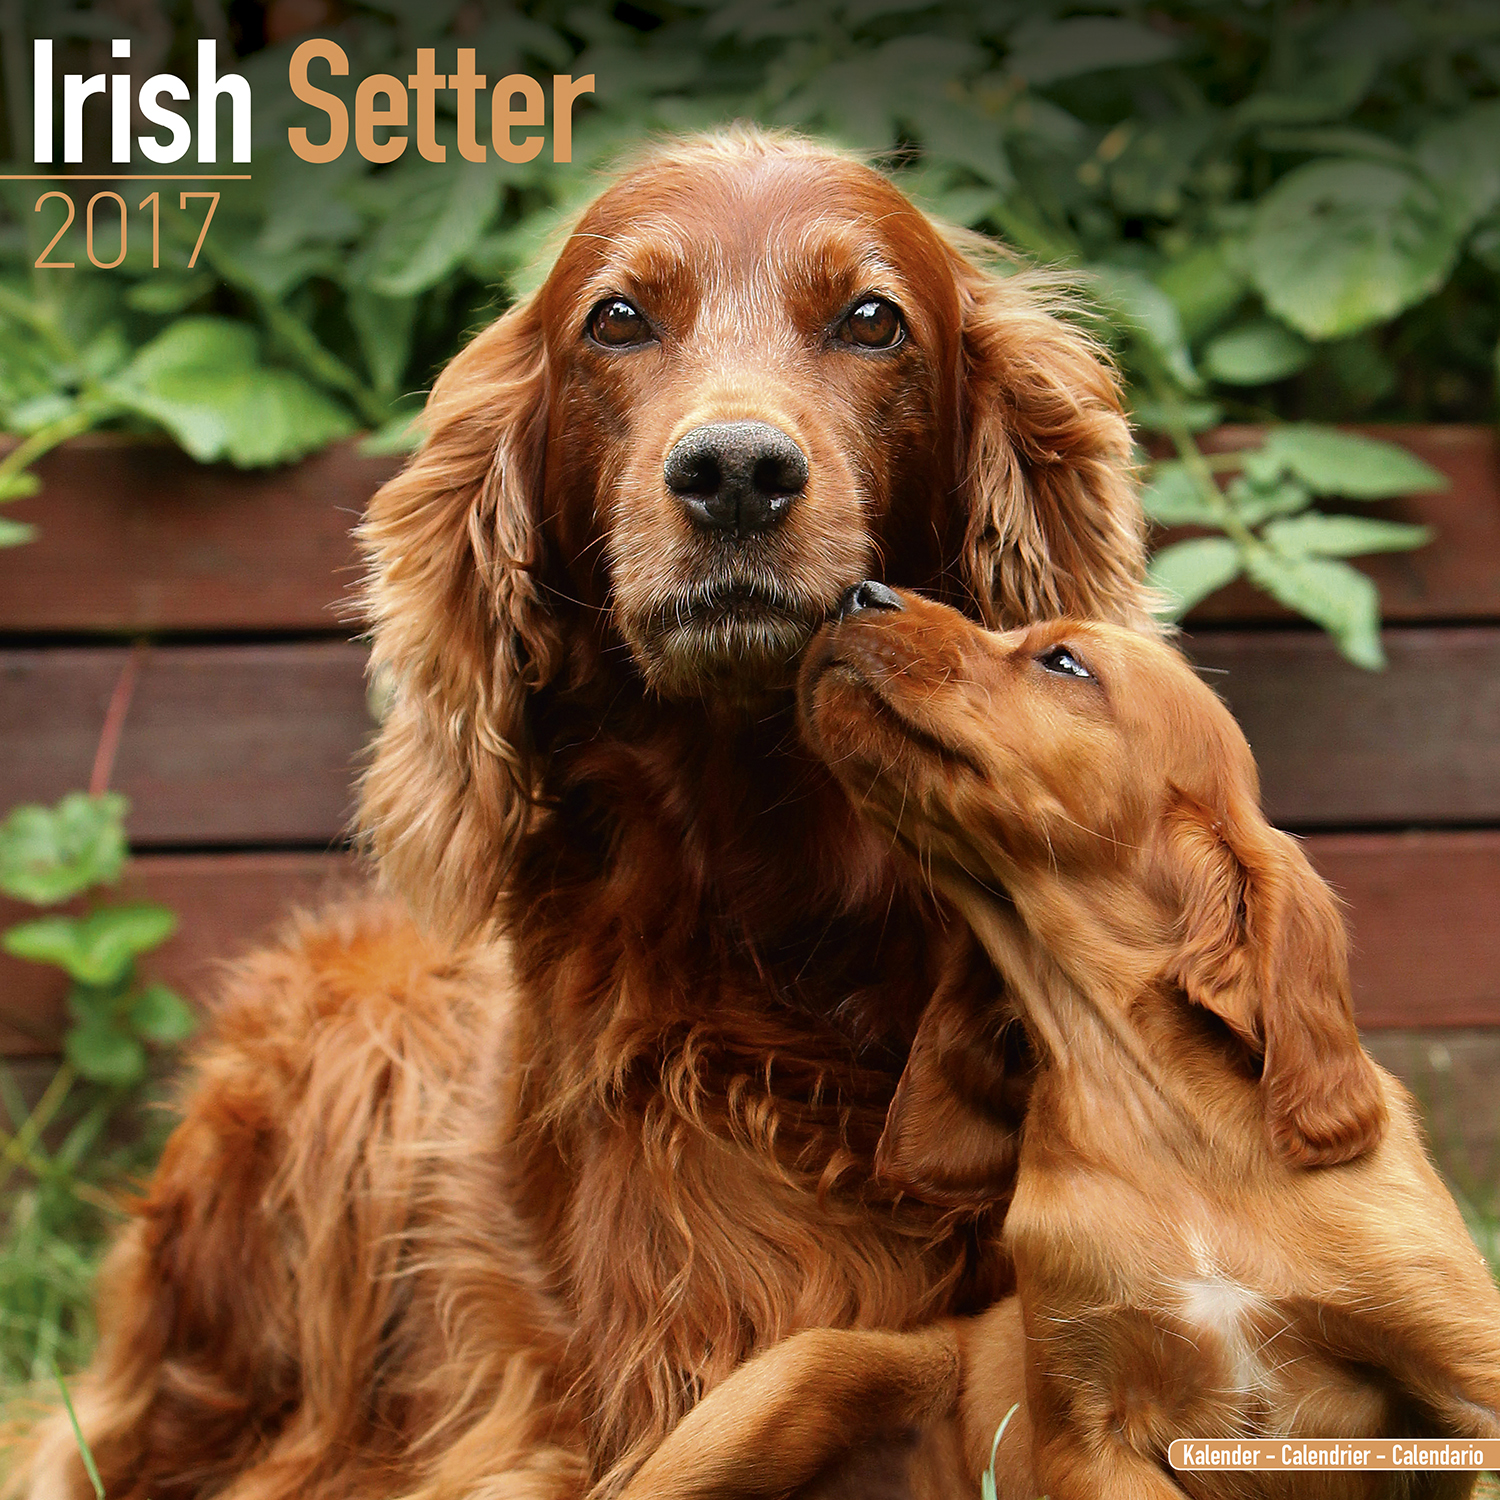 Irish Setter HD wallpapers, Desktop wallpaper - most viewed